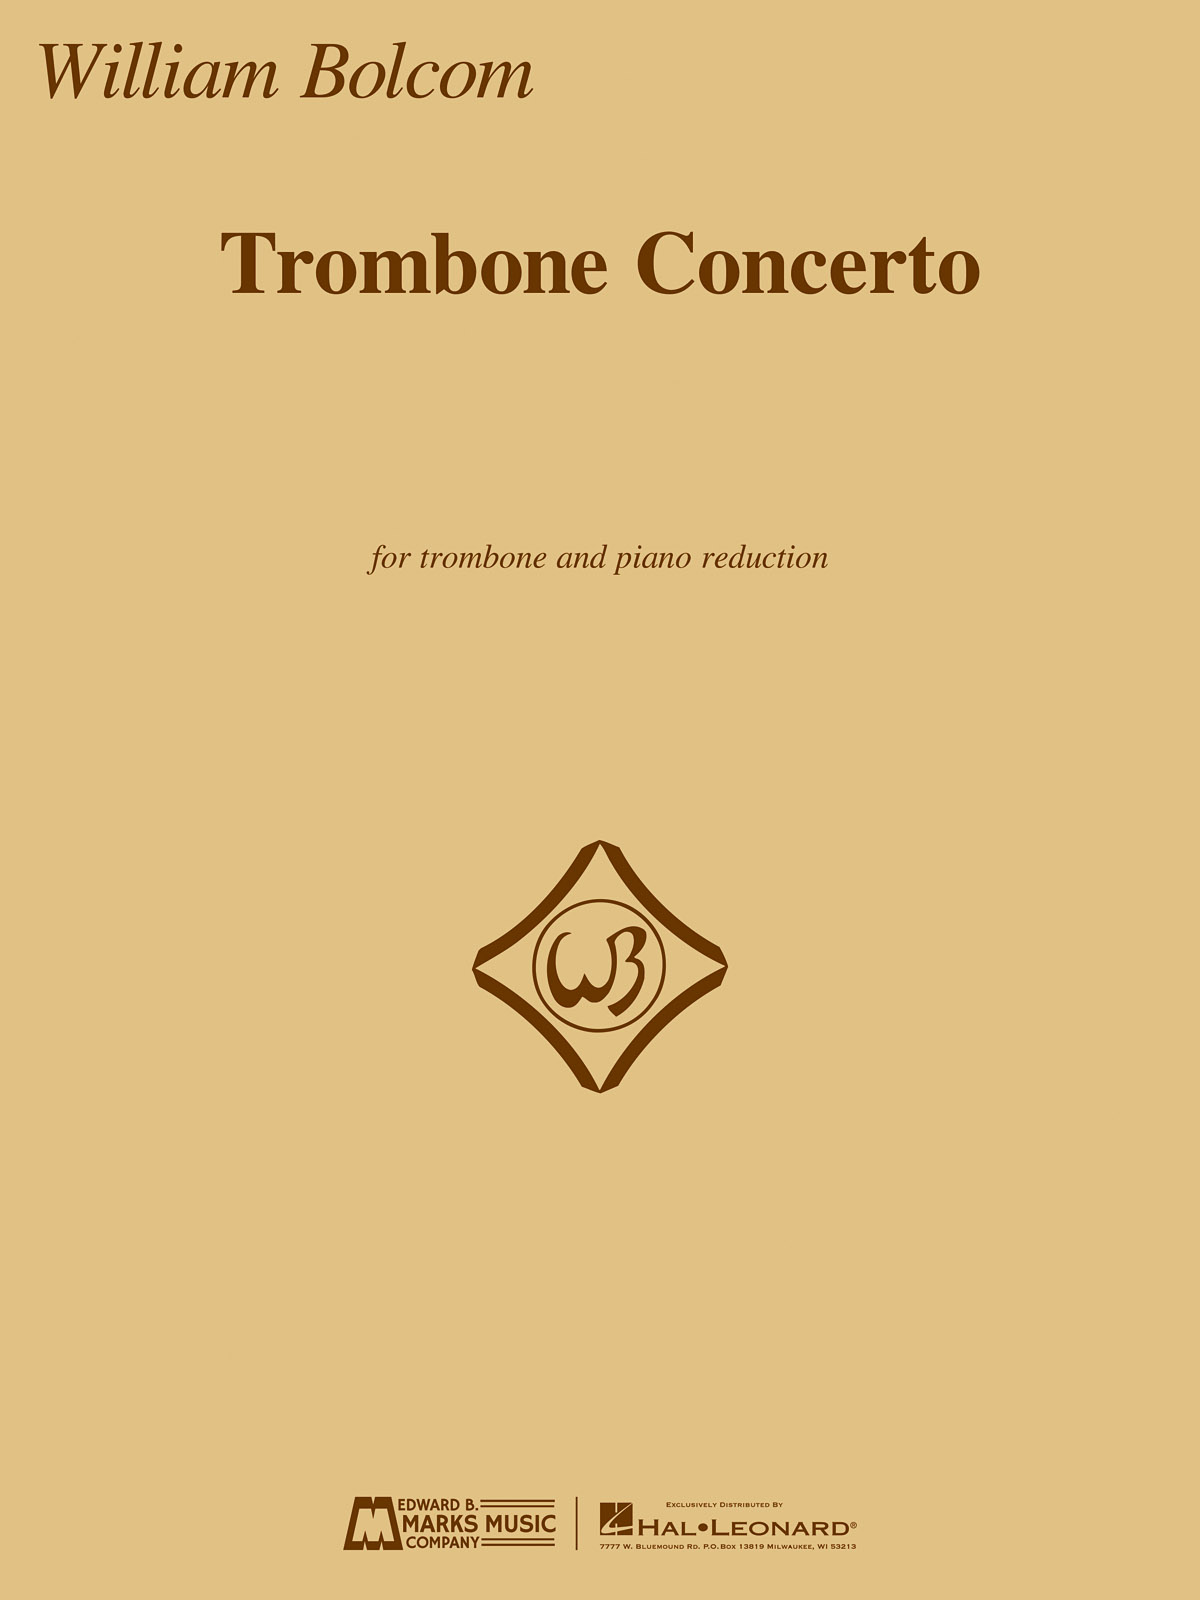 William Bolcom: Trombone Concerto